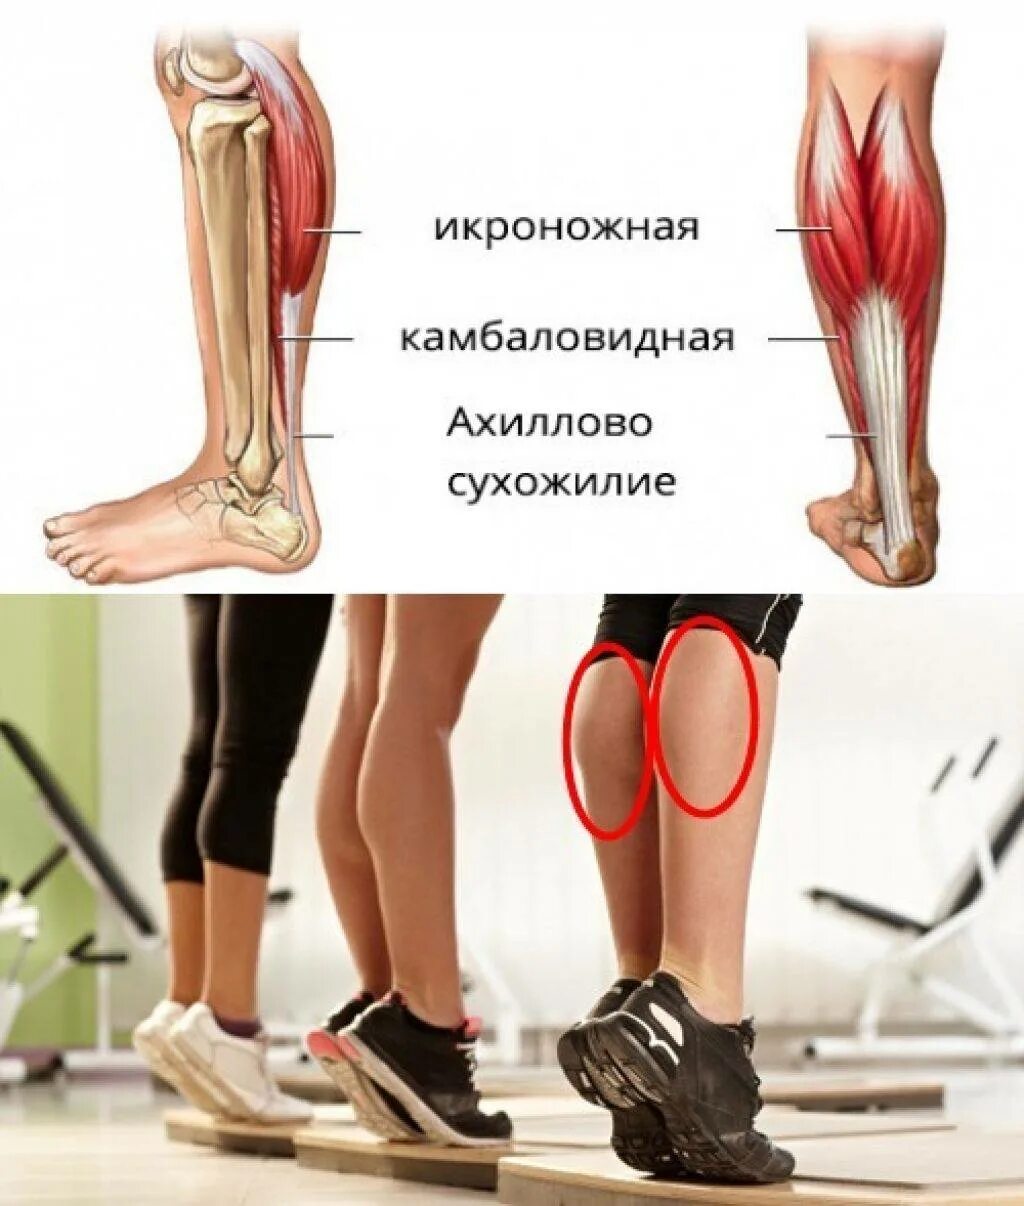 Ноги и мышцы все время. Икроножная и камбаловидная. Камбаловидная мышца упражнения. Икроножная и камбаловидная мышцы. Тренировка икроножных мышц.